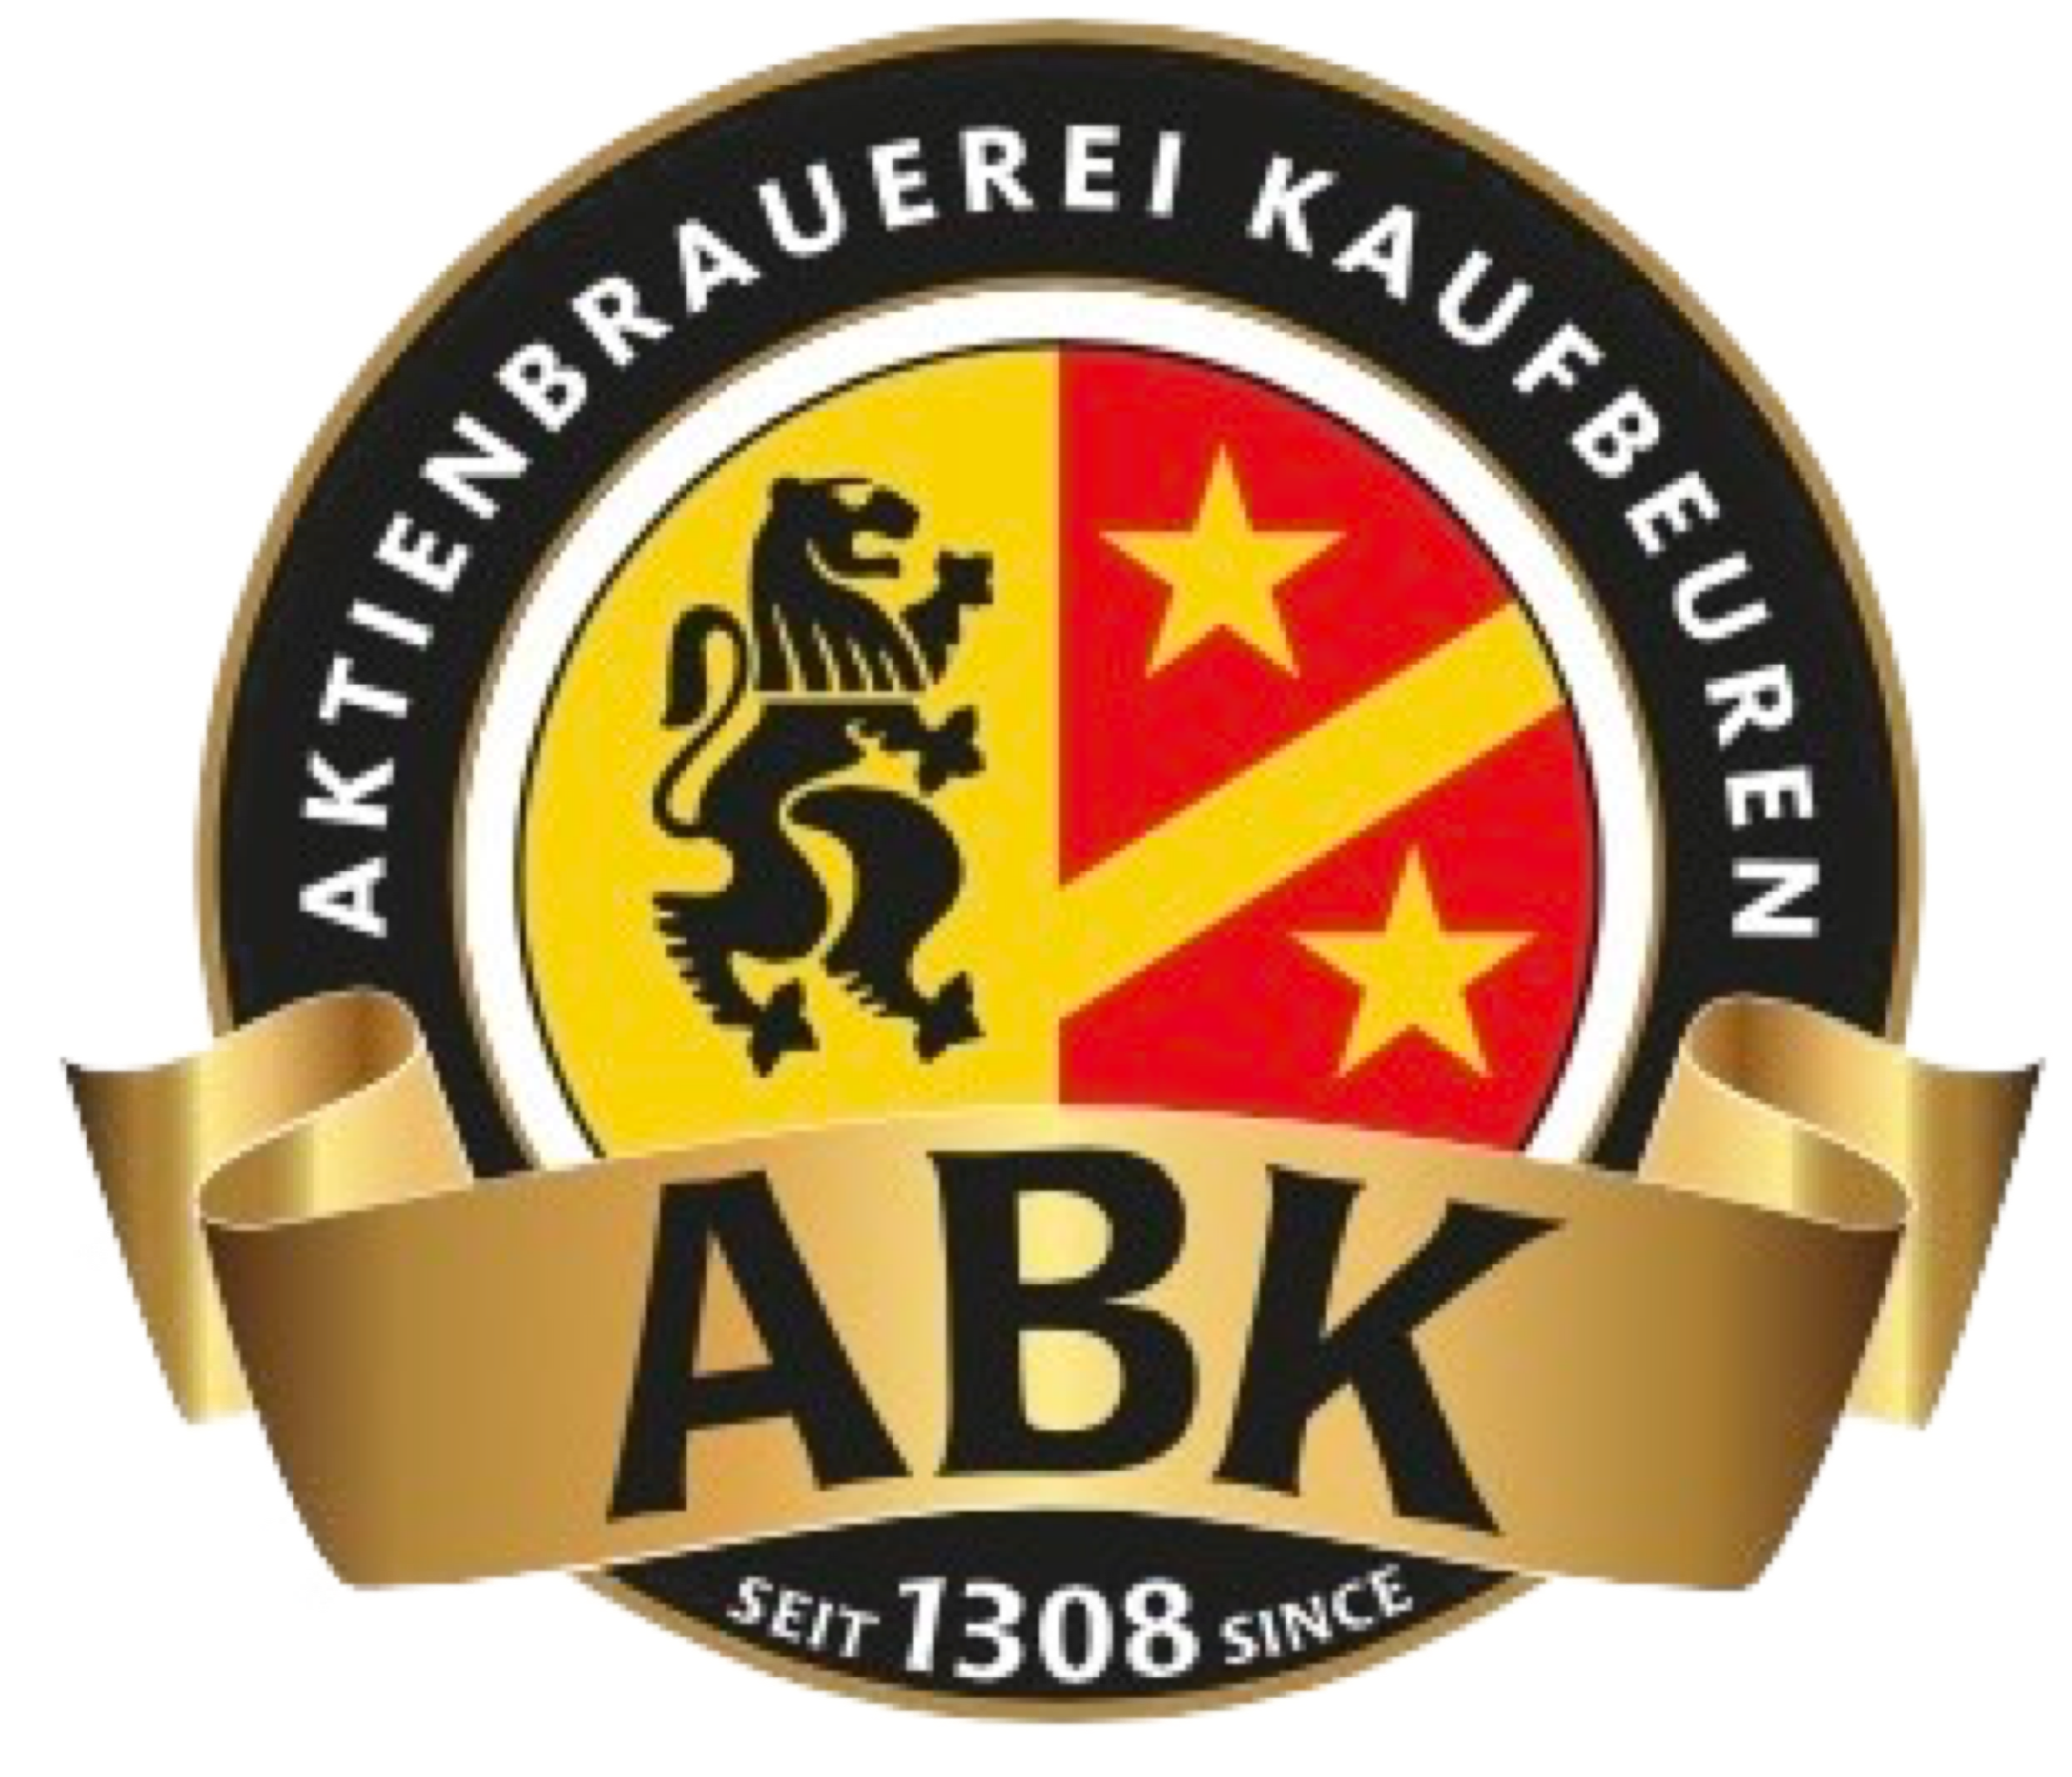 ABK Betriebsgesellschaft der Aktienbrauerei Kaufbeuren GmbH